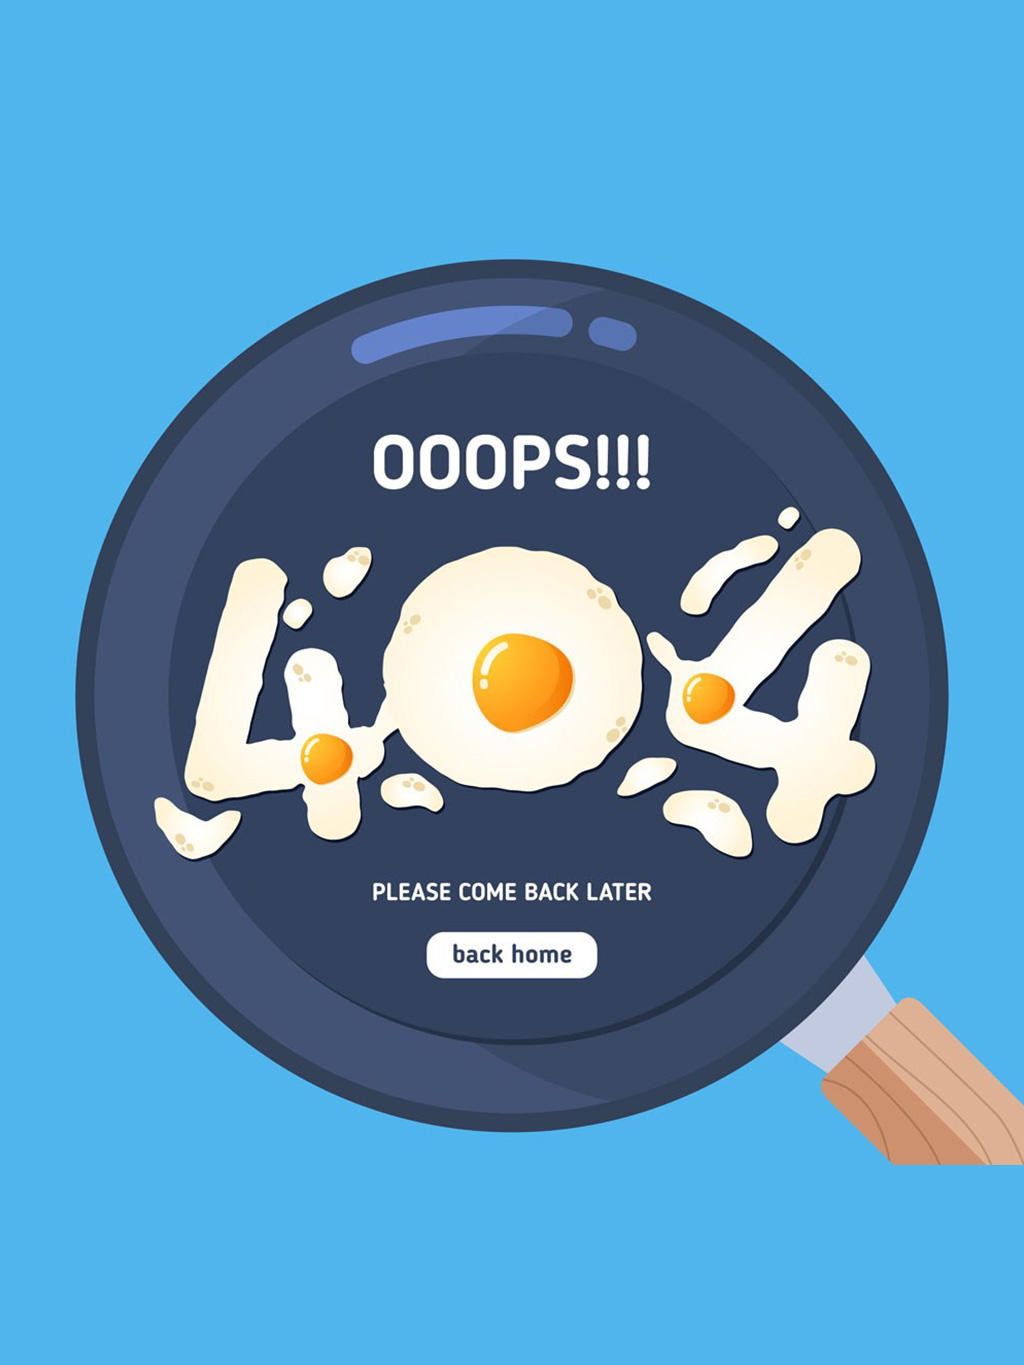 创意404错误页面煎鸡蛋矢量素材 